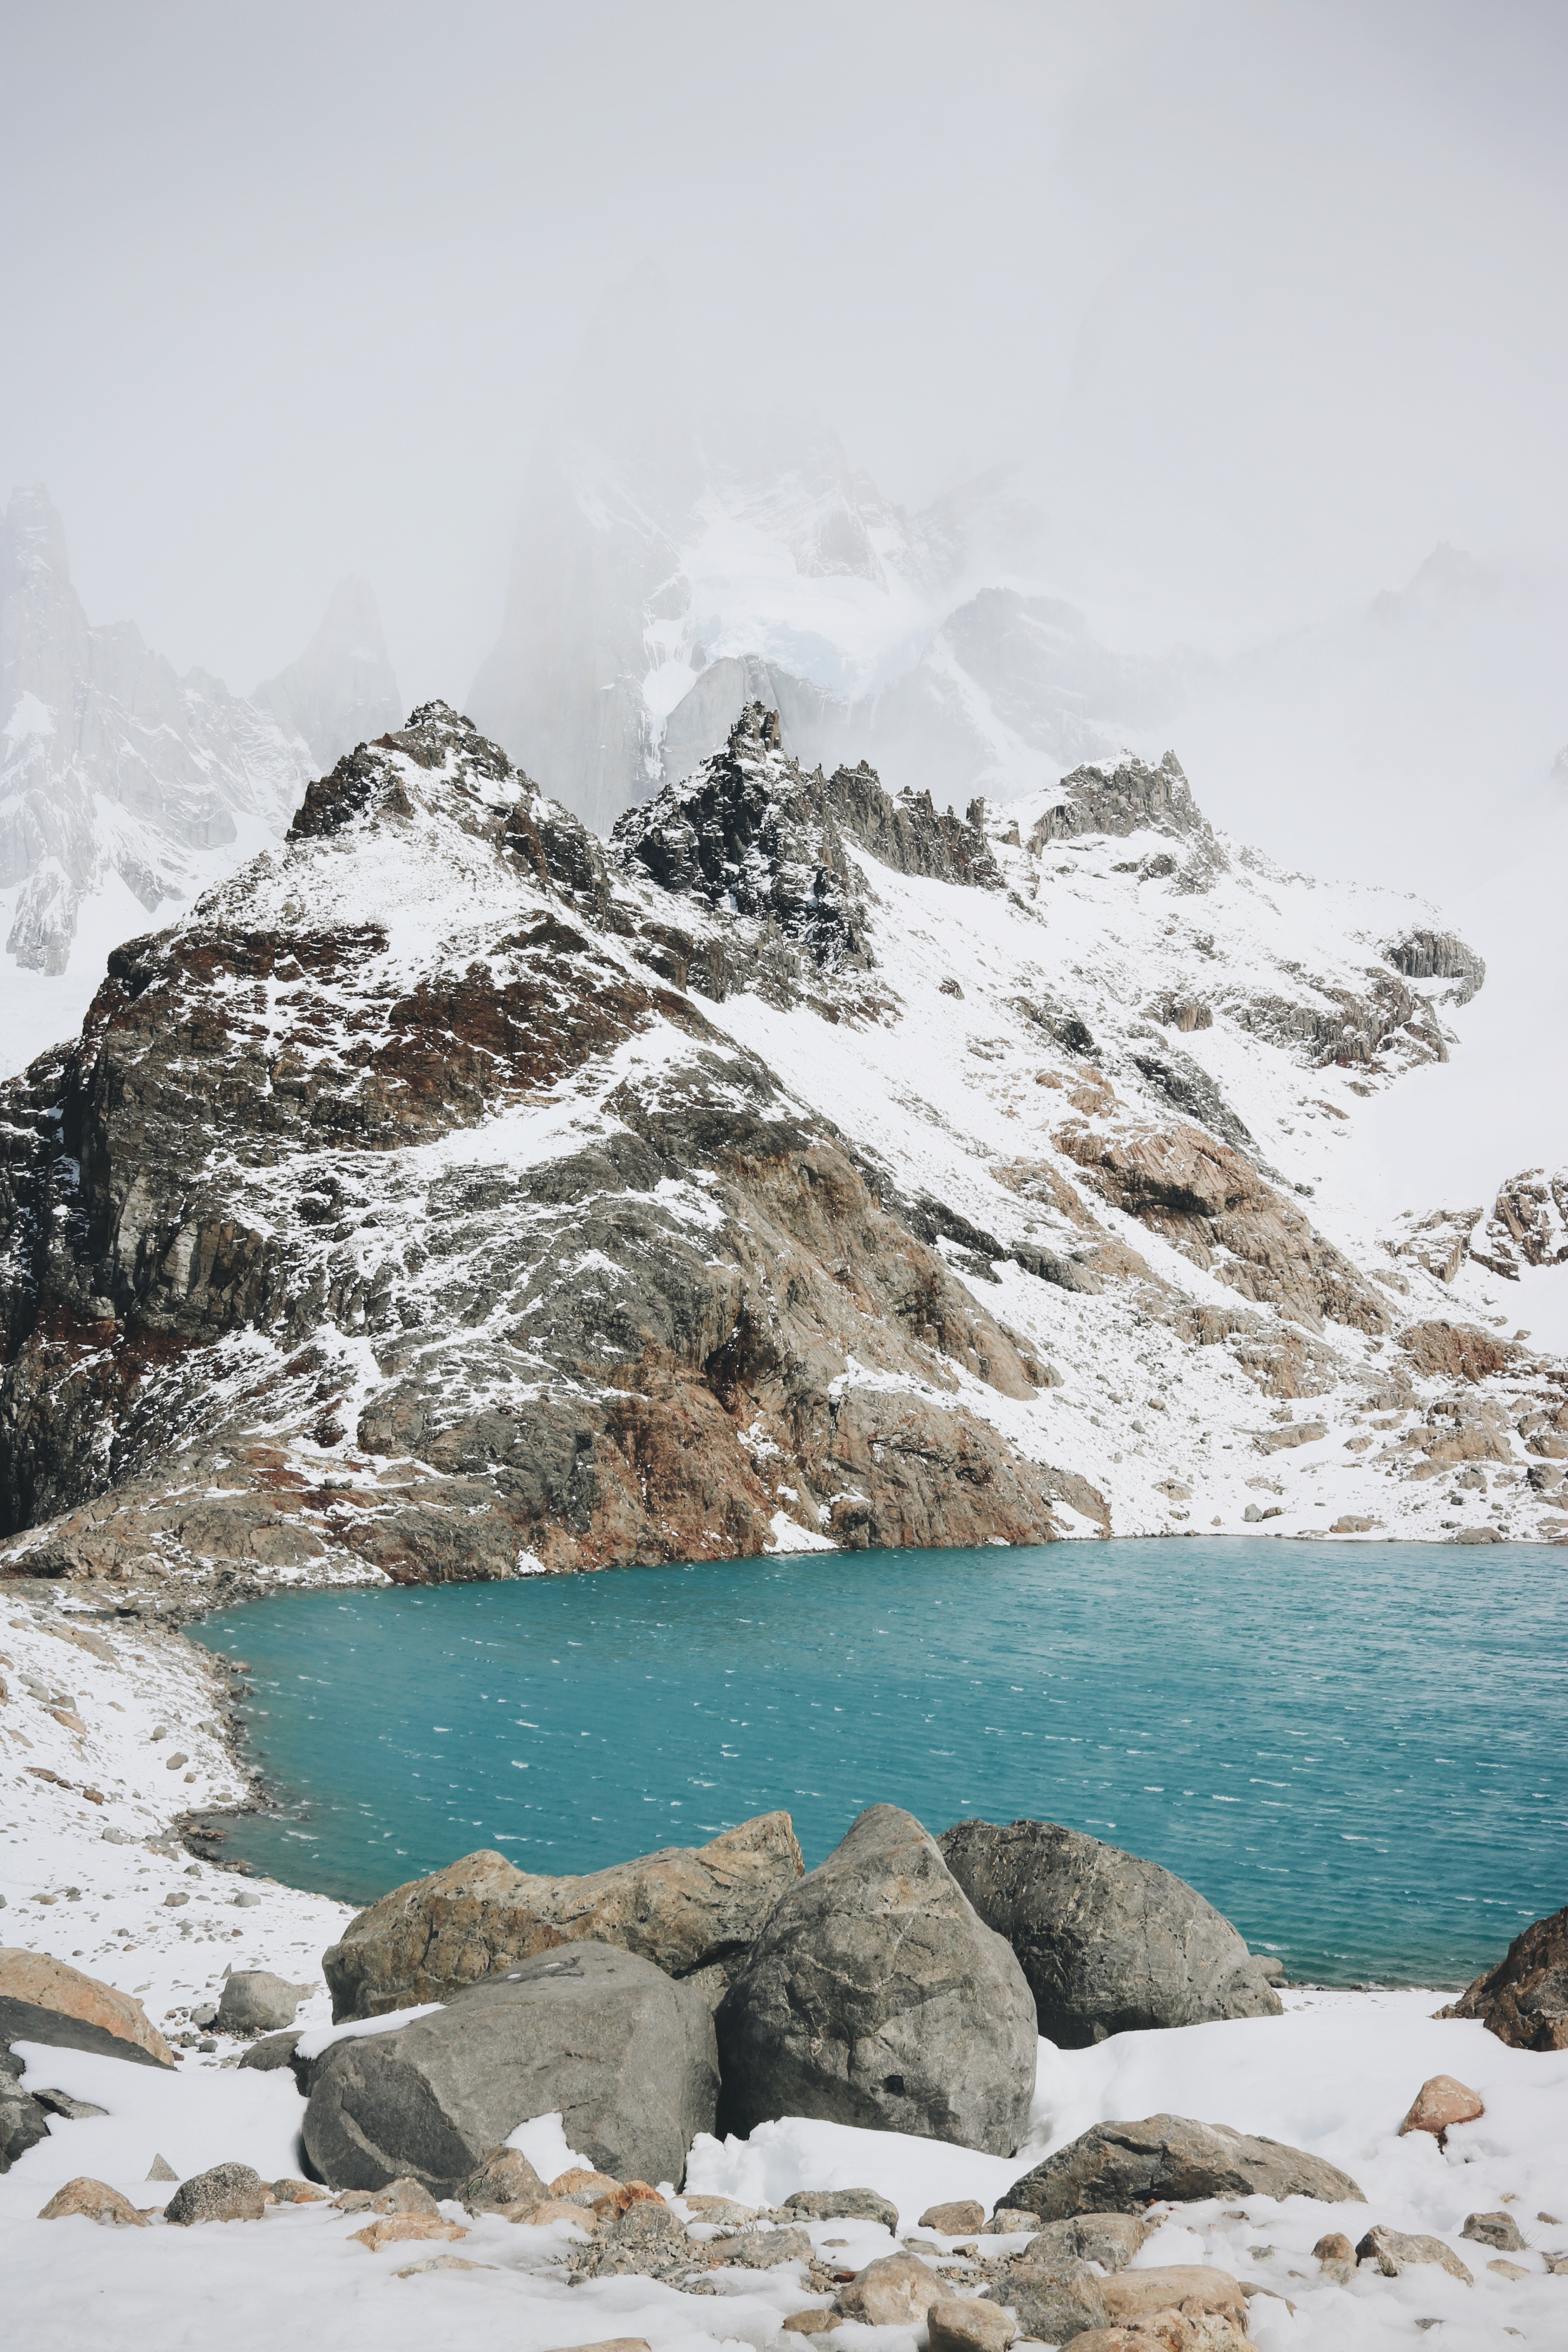 Blog voyage Patagonie